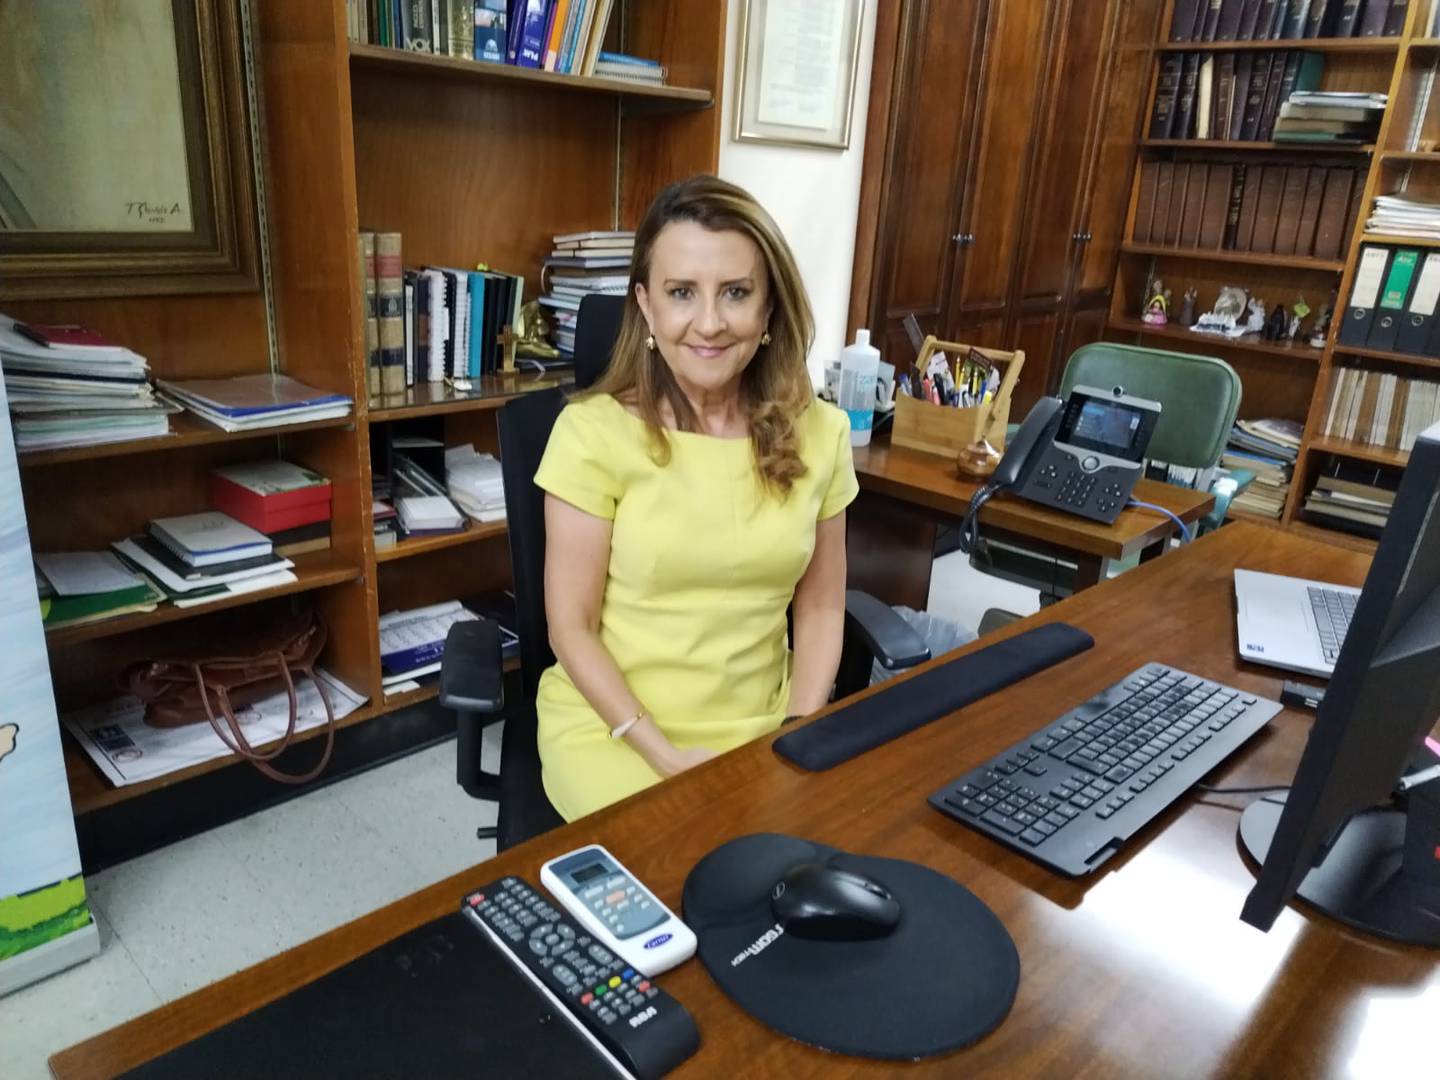 La doctora Olga Arguedas Arguedas, después de 38 años trabajando con la CCSS, los últimos 8 como directora del Hospital Nacional de Niños, se pensionó el viernes 11 de agosto del 2023. Atendió a La Teja para una entrevista en el Hospital de Niños el 15 de agosto de 2023.